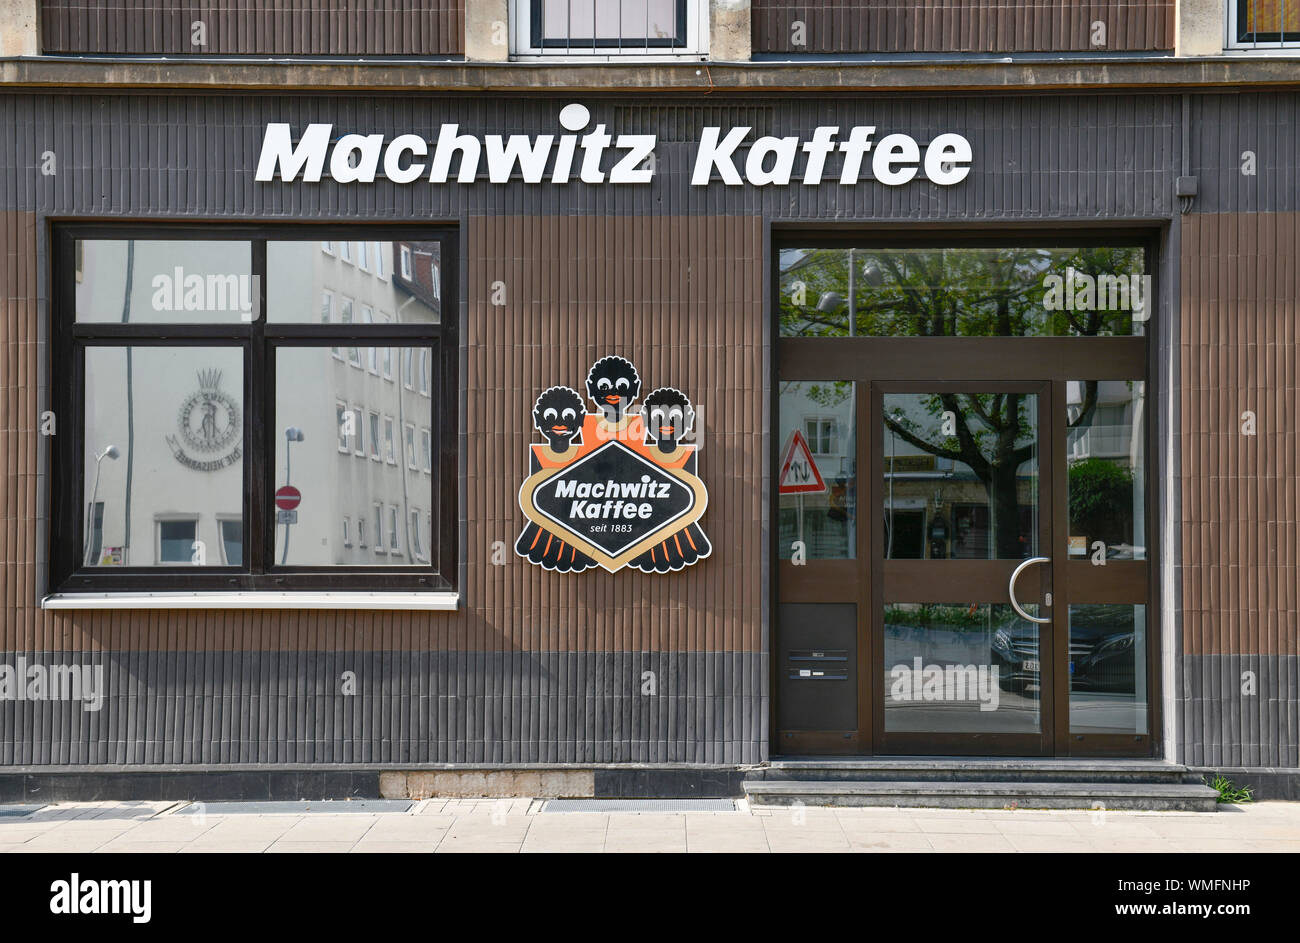 Machwitz Kaffee, Am Marstall, Hannover, Niedersachsen, Deutschland Stock Photo